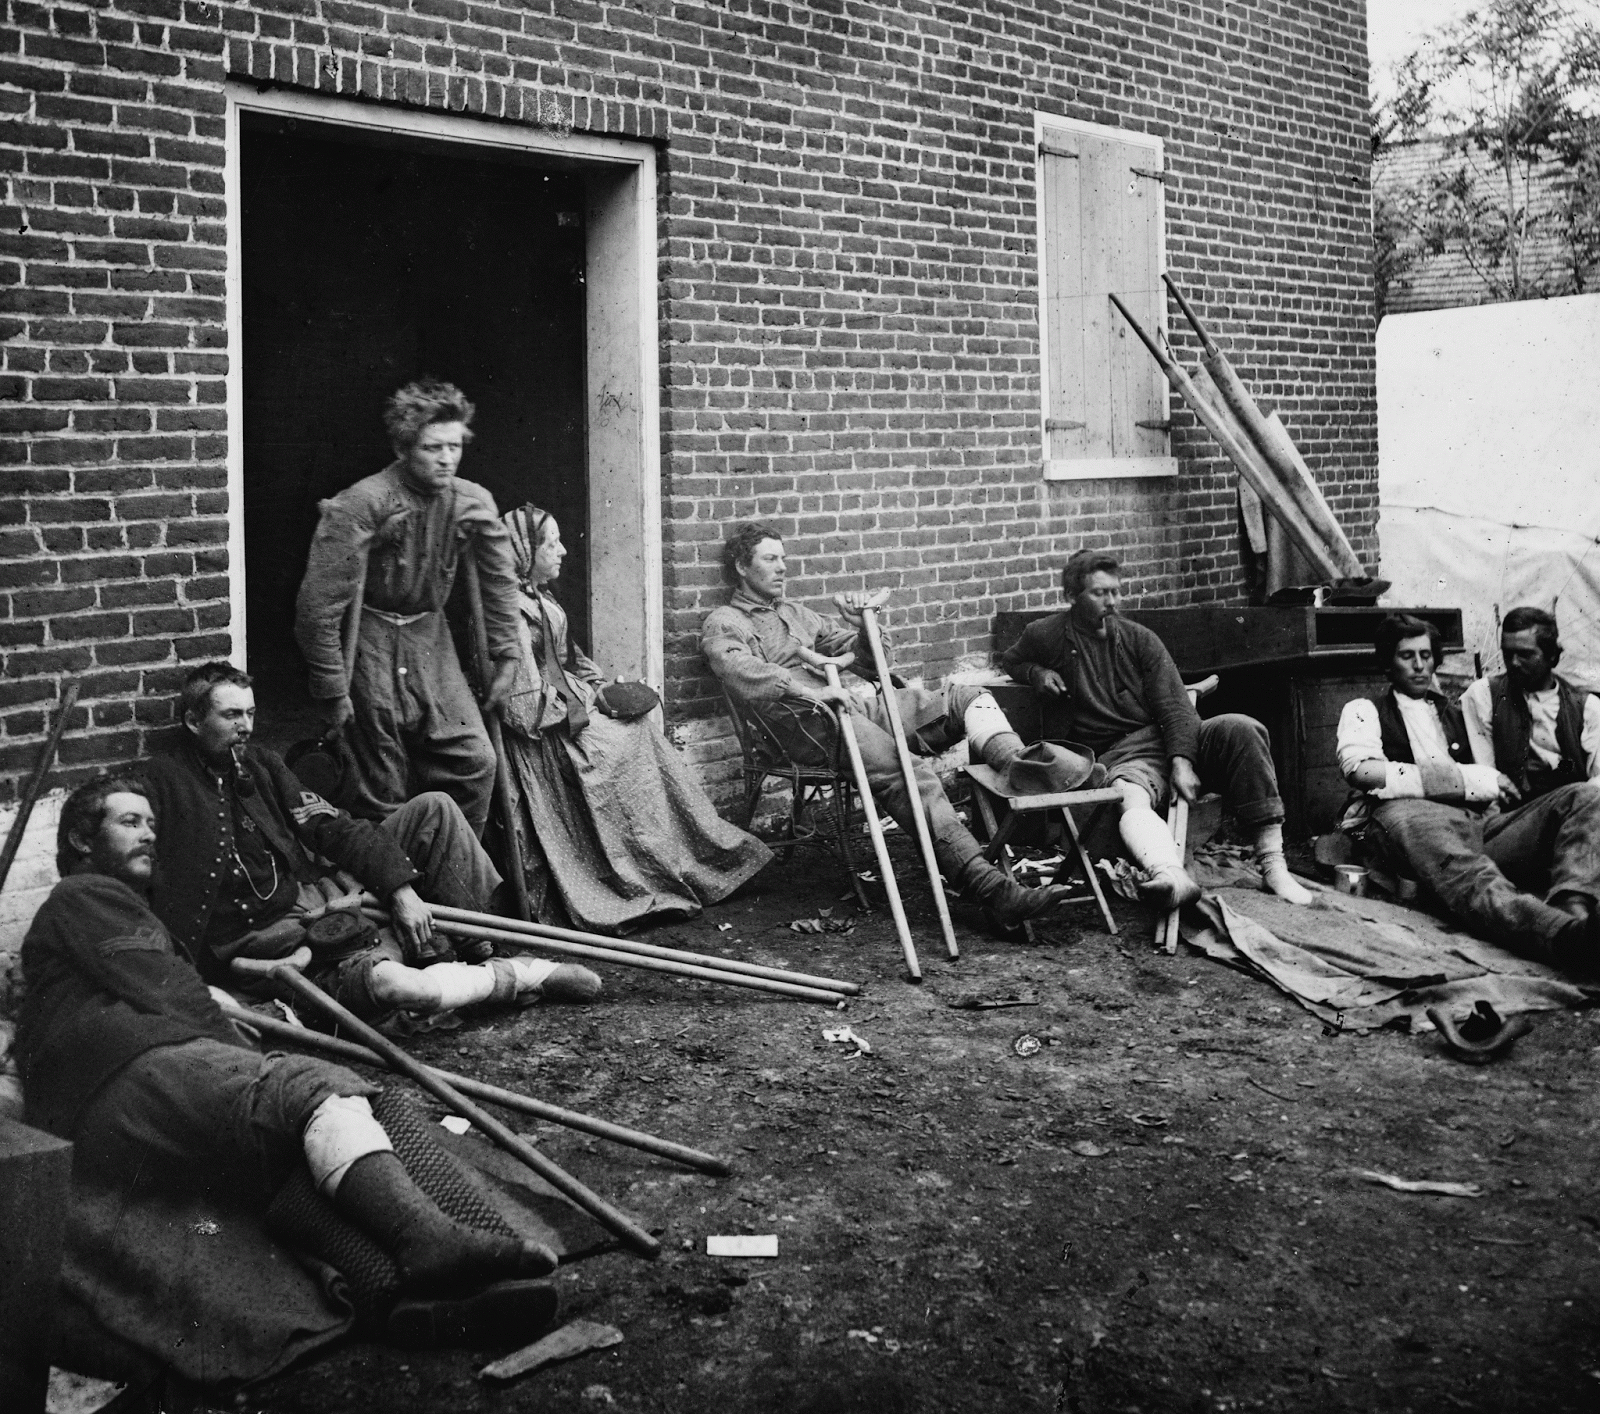 Последствия после гражданской войны. Фото гражданской войны в США 1861-1865. Джорджия 1861 год.